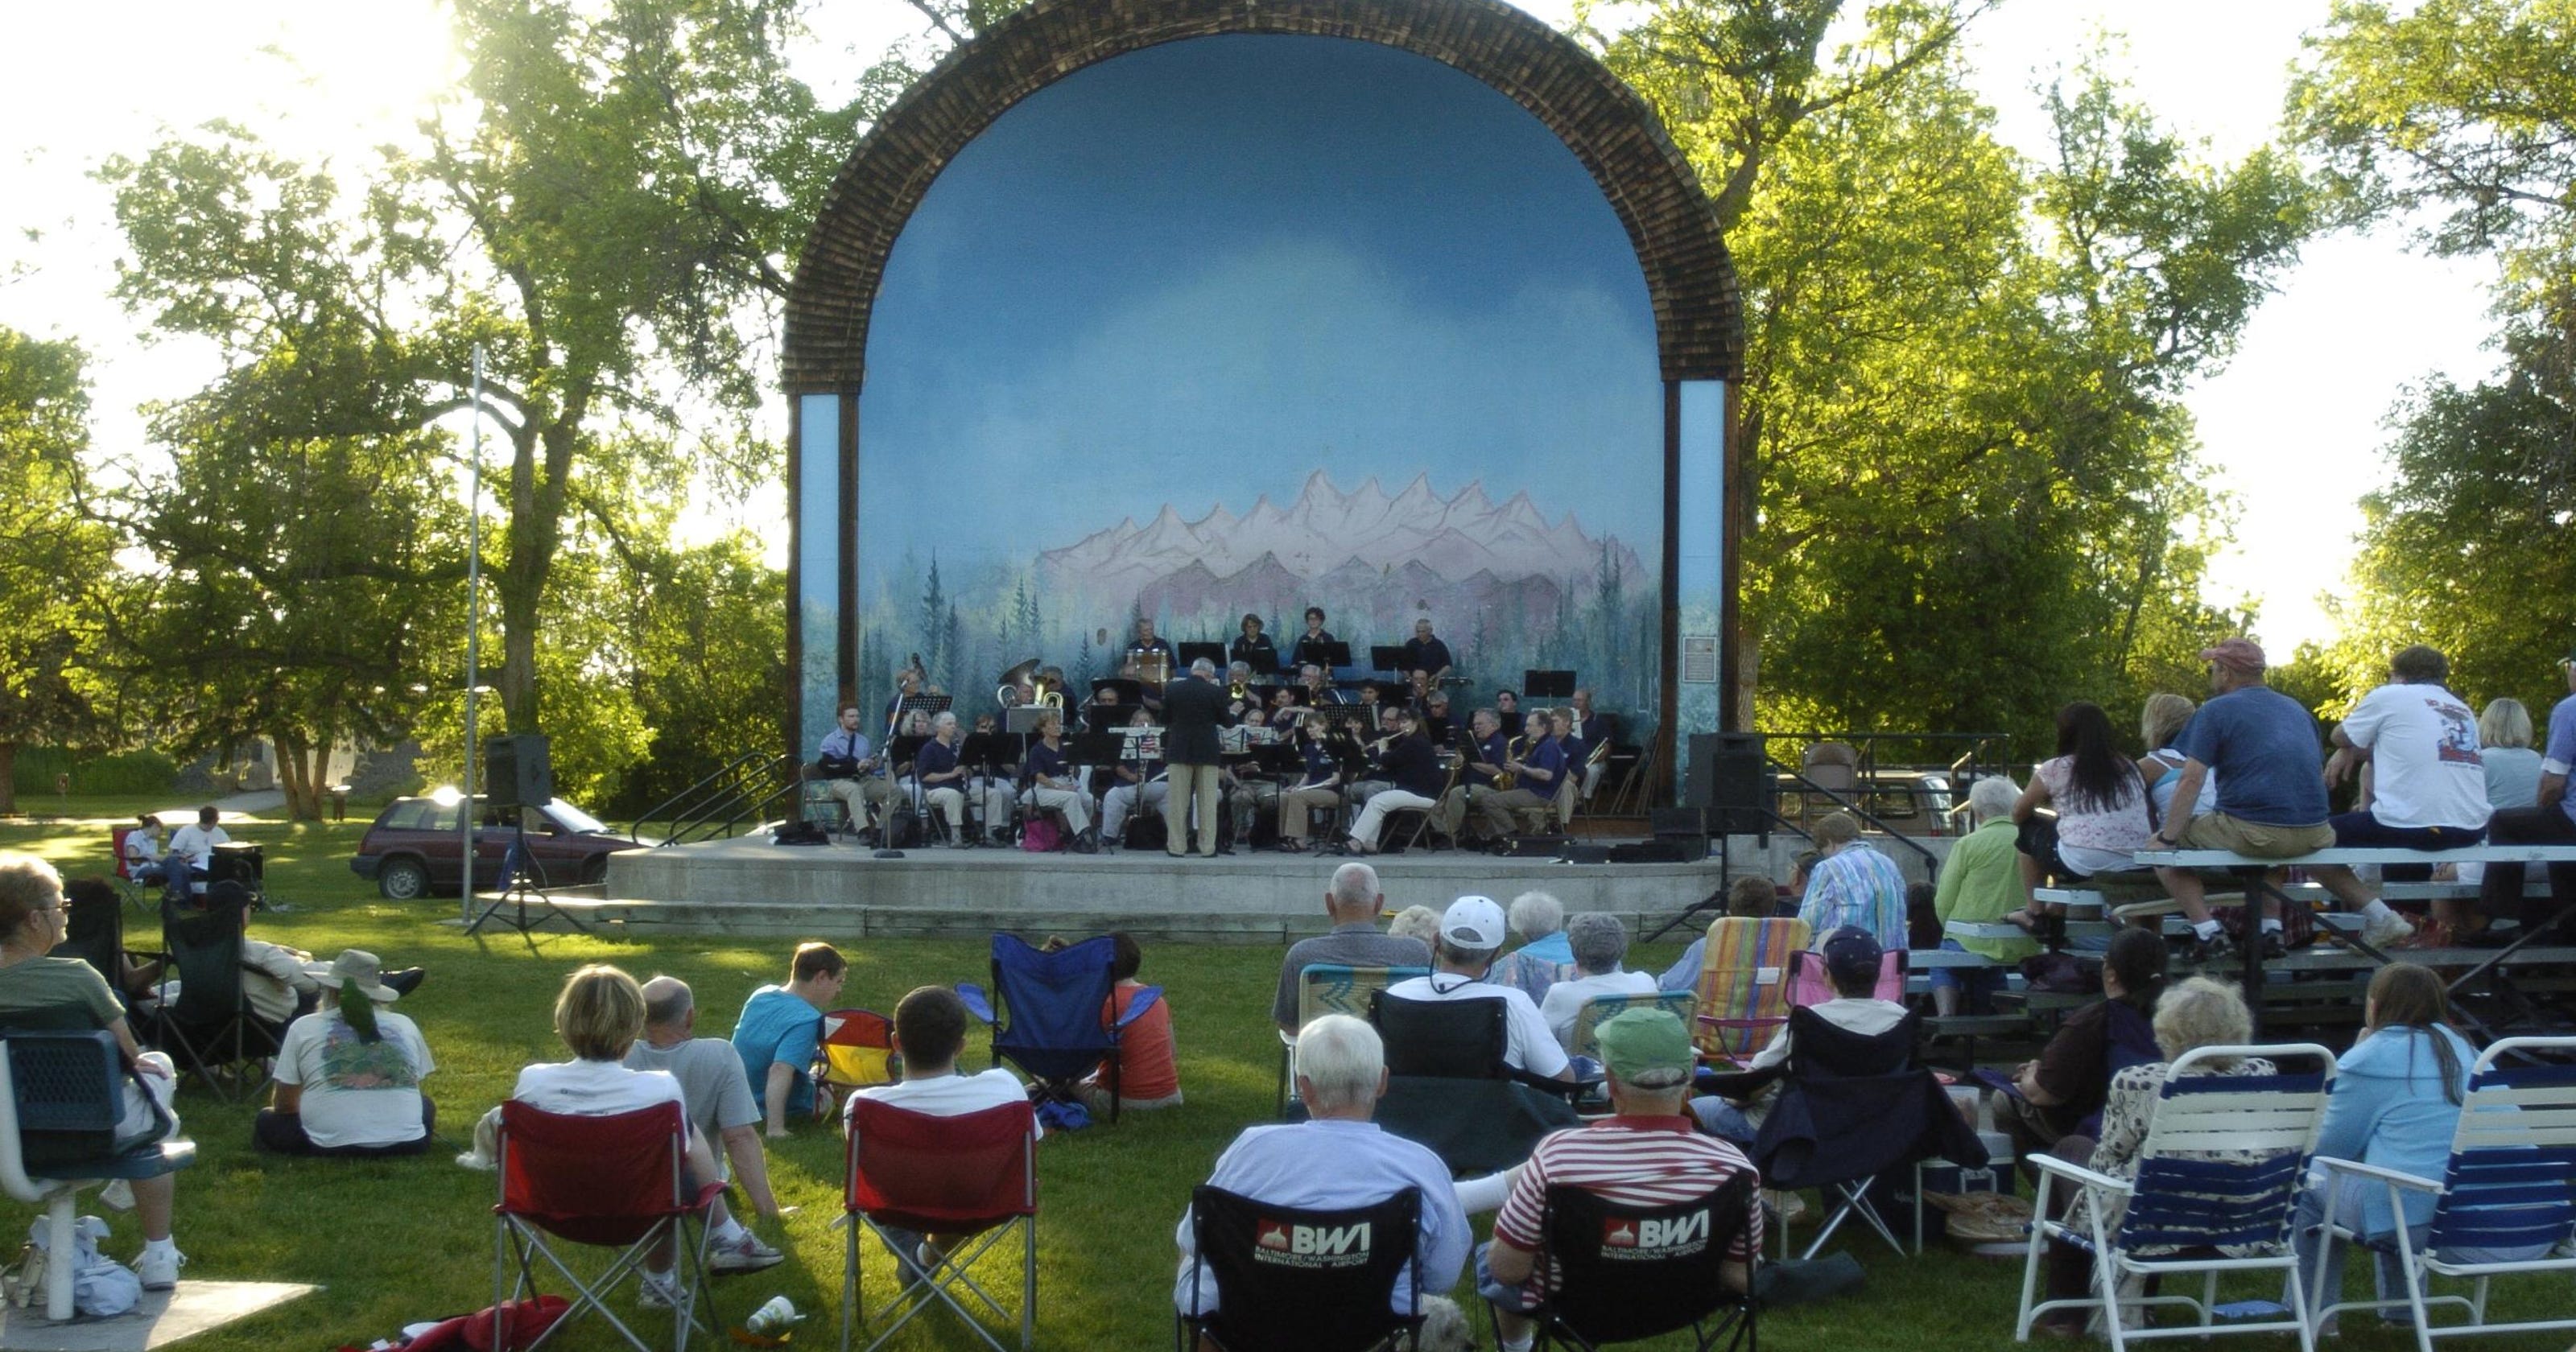 Great Falls Municipal Band summer concert series begins